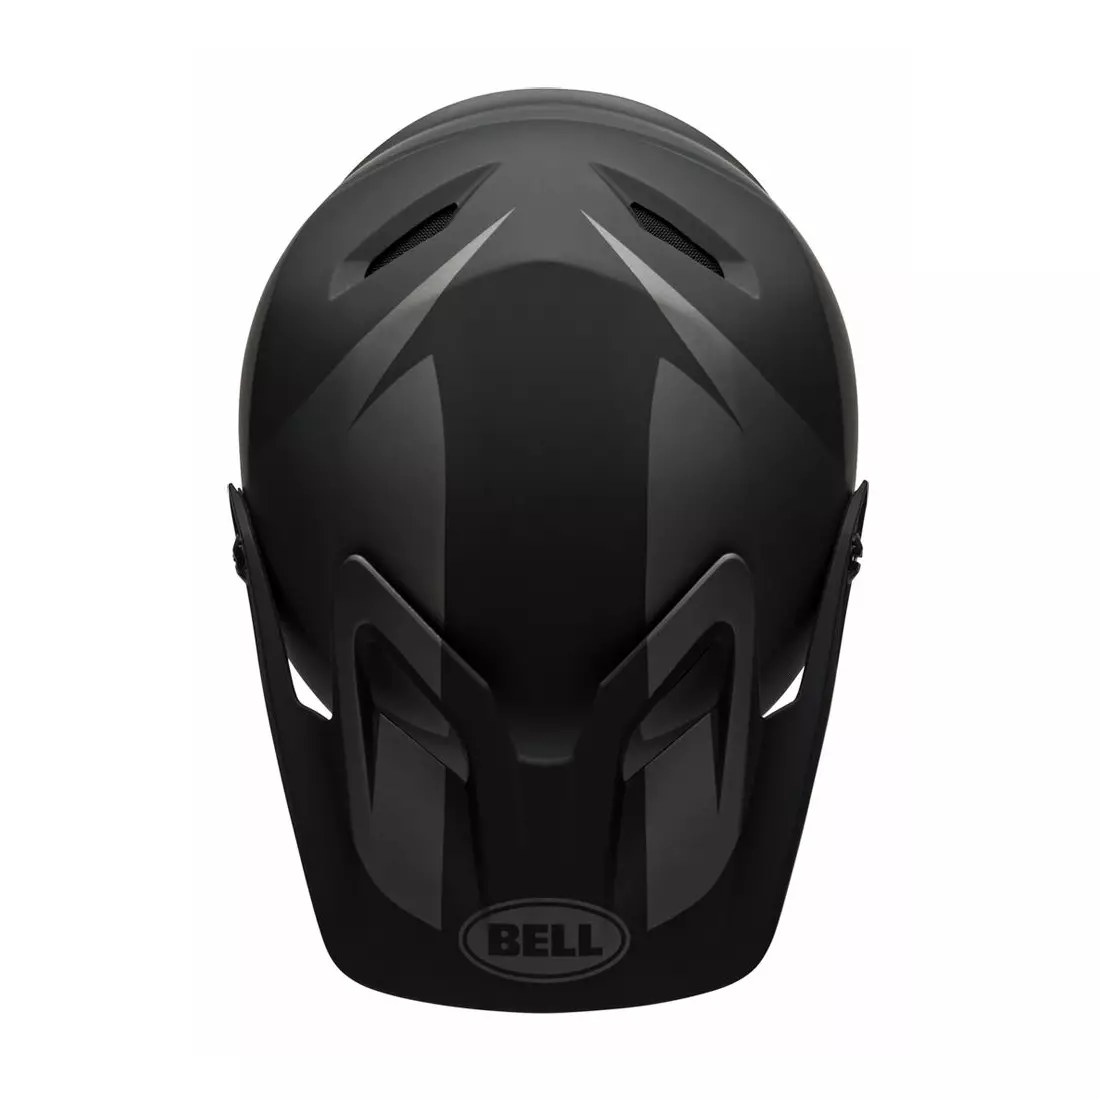 BELL Bicycle helmet full face TRANSFER matte black